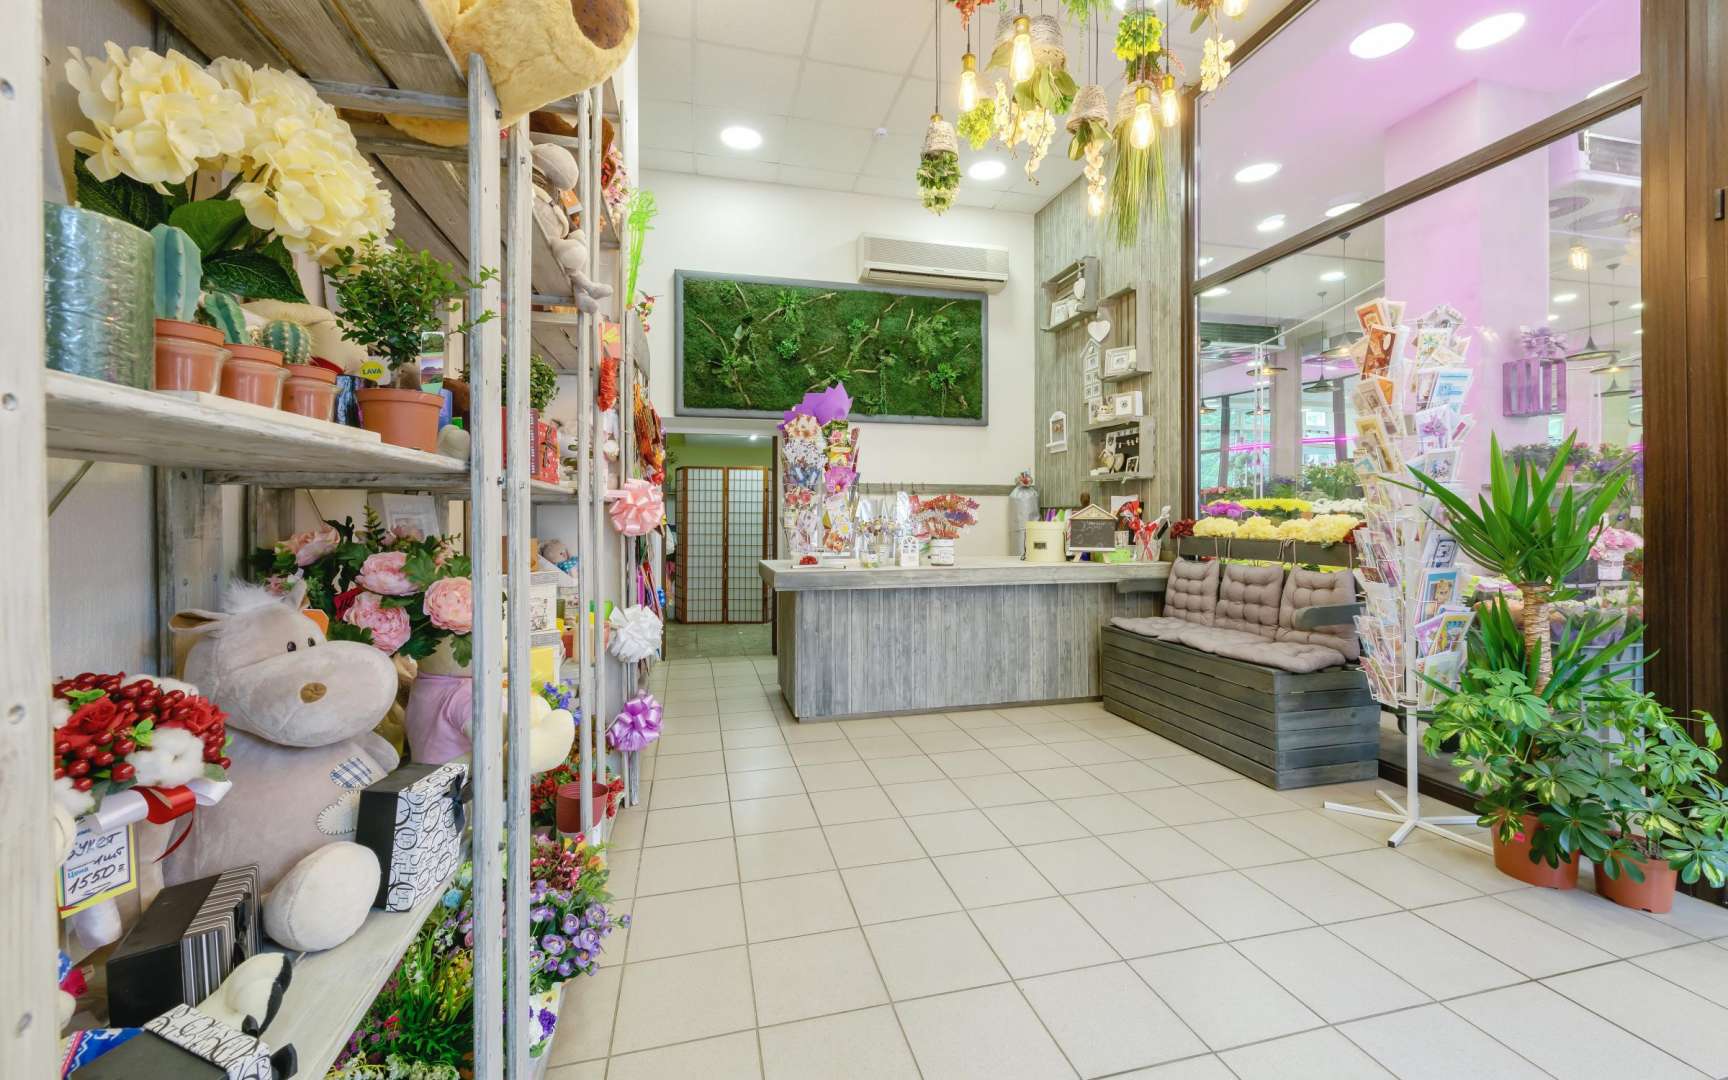 Магазин готовых магазинов спб. Цветочный бизнес. Галерея цветов. Интерьер цветочного магазина. Цветочный салон.